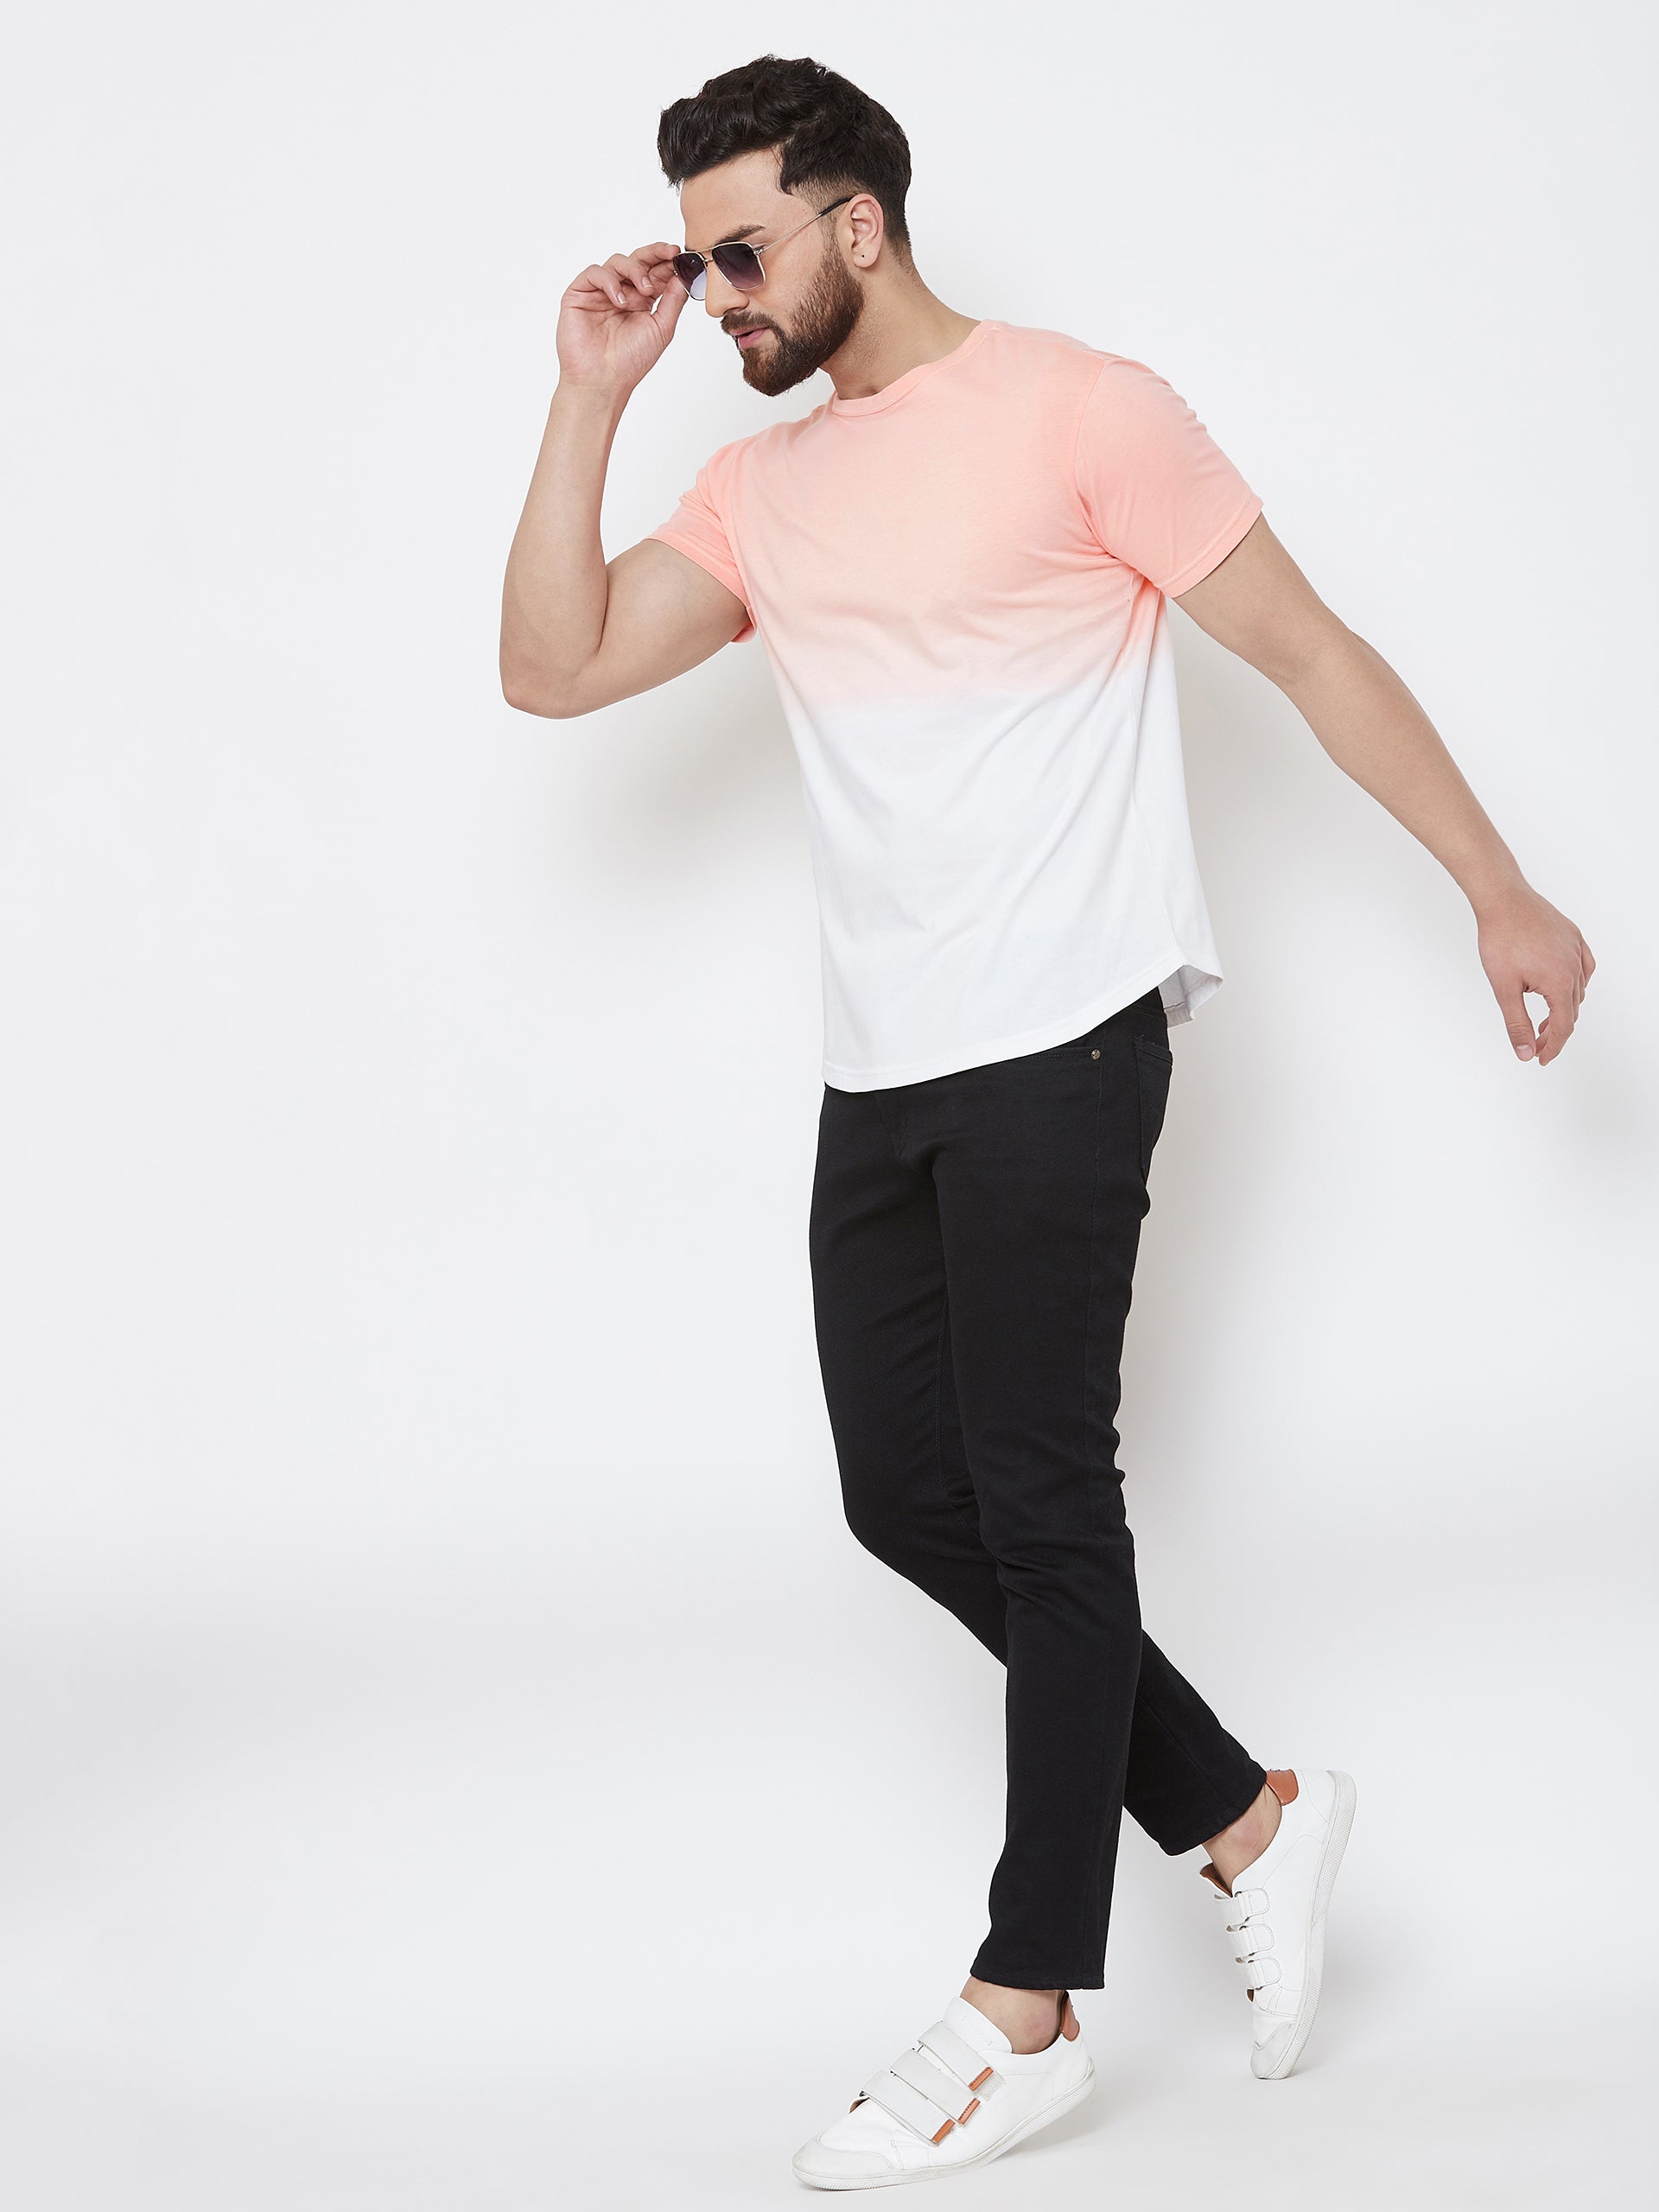 White/Pink Tie Dye Half Sleeve Round Neck T-Shirt